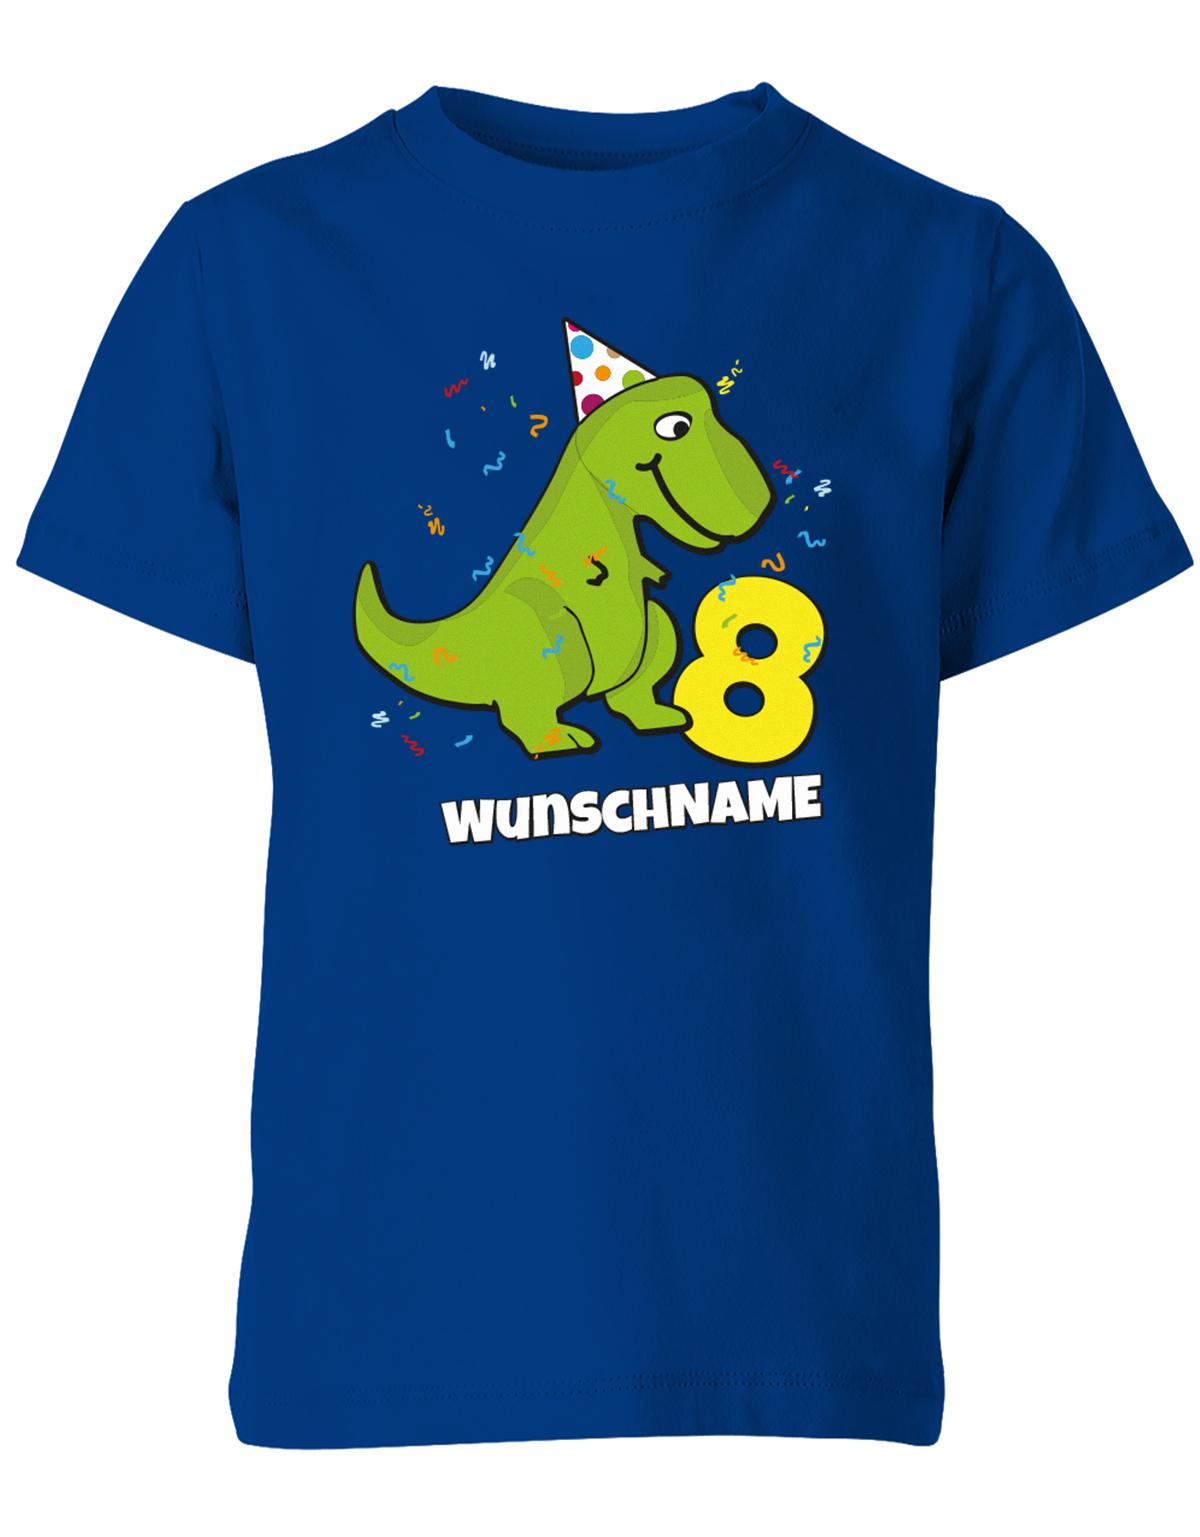 ich-bin-8-Dinosaurier-t-rex-wunschname-geburtstag-kinder-shirt-royalblau